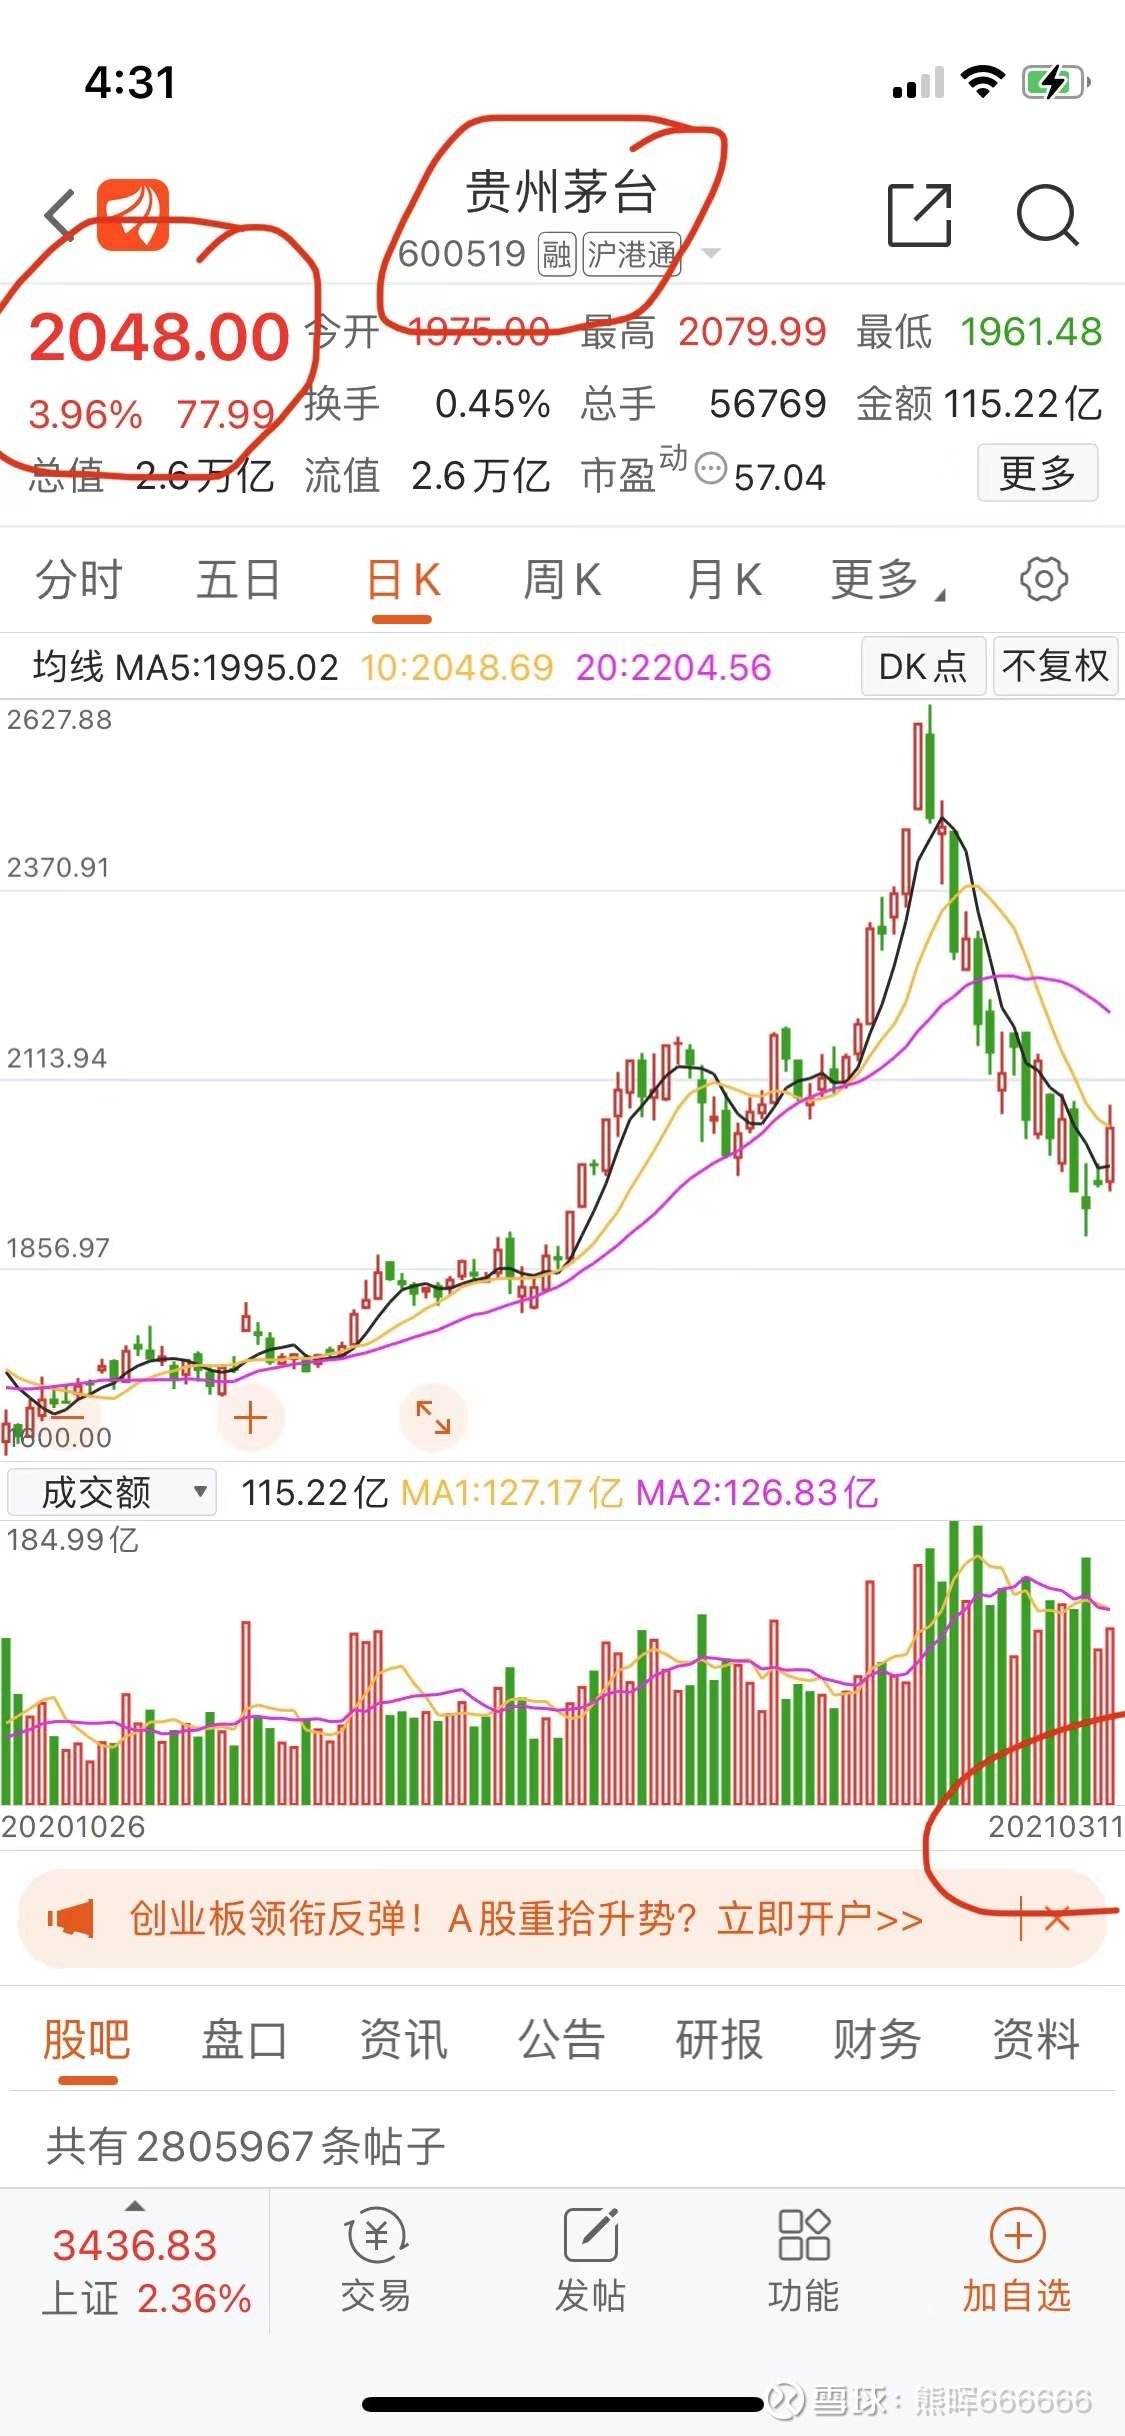 关于贵州茅台股票k线图贵州茅台股票10年走势的信息